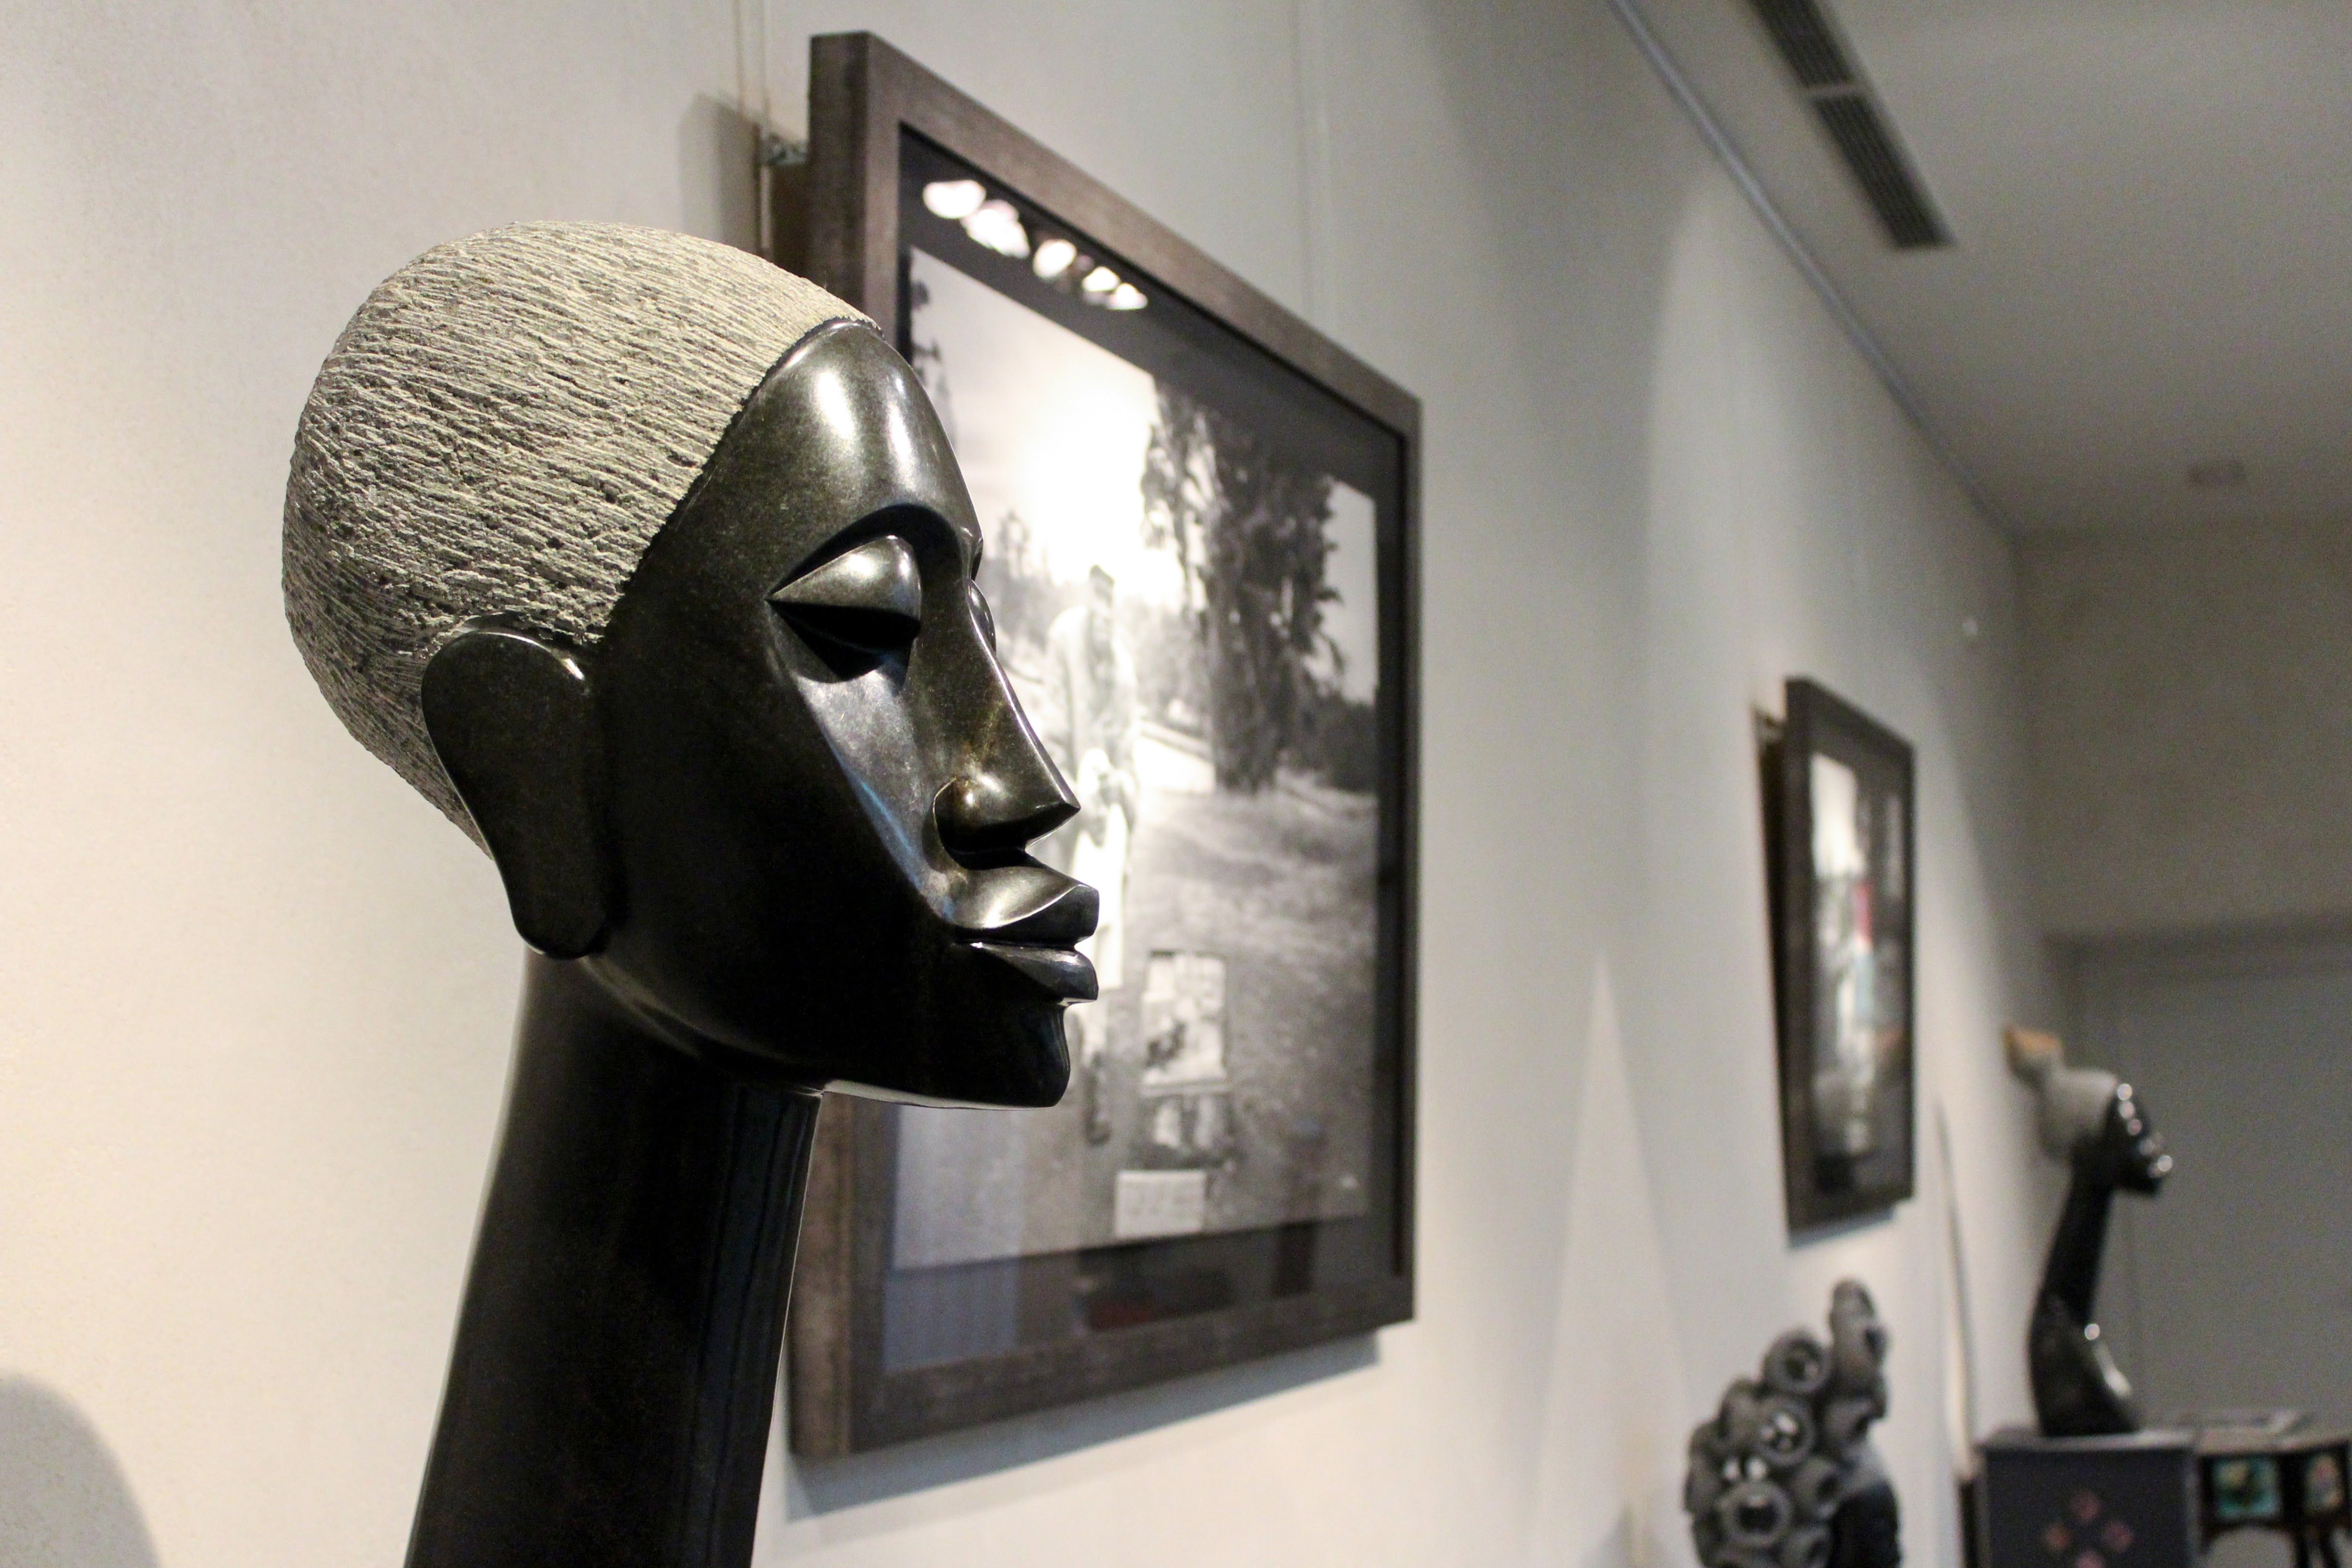 Foto 19 de Galería de arte africano en Madrid | Gazzambo Gallery